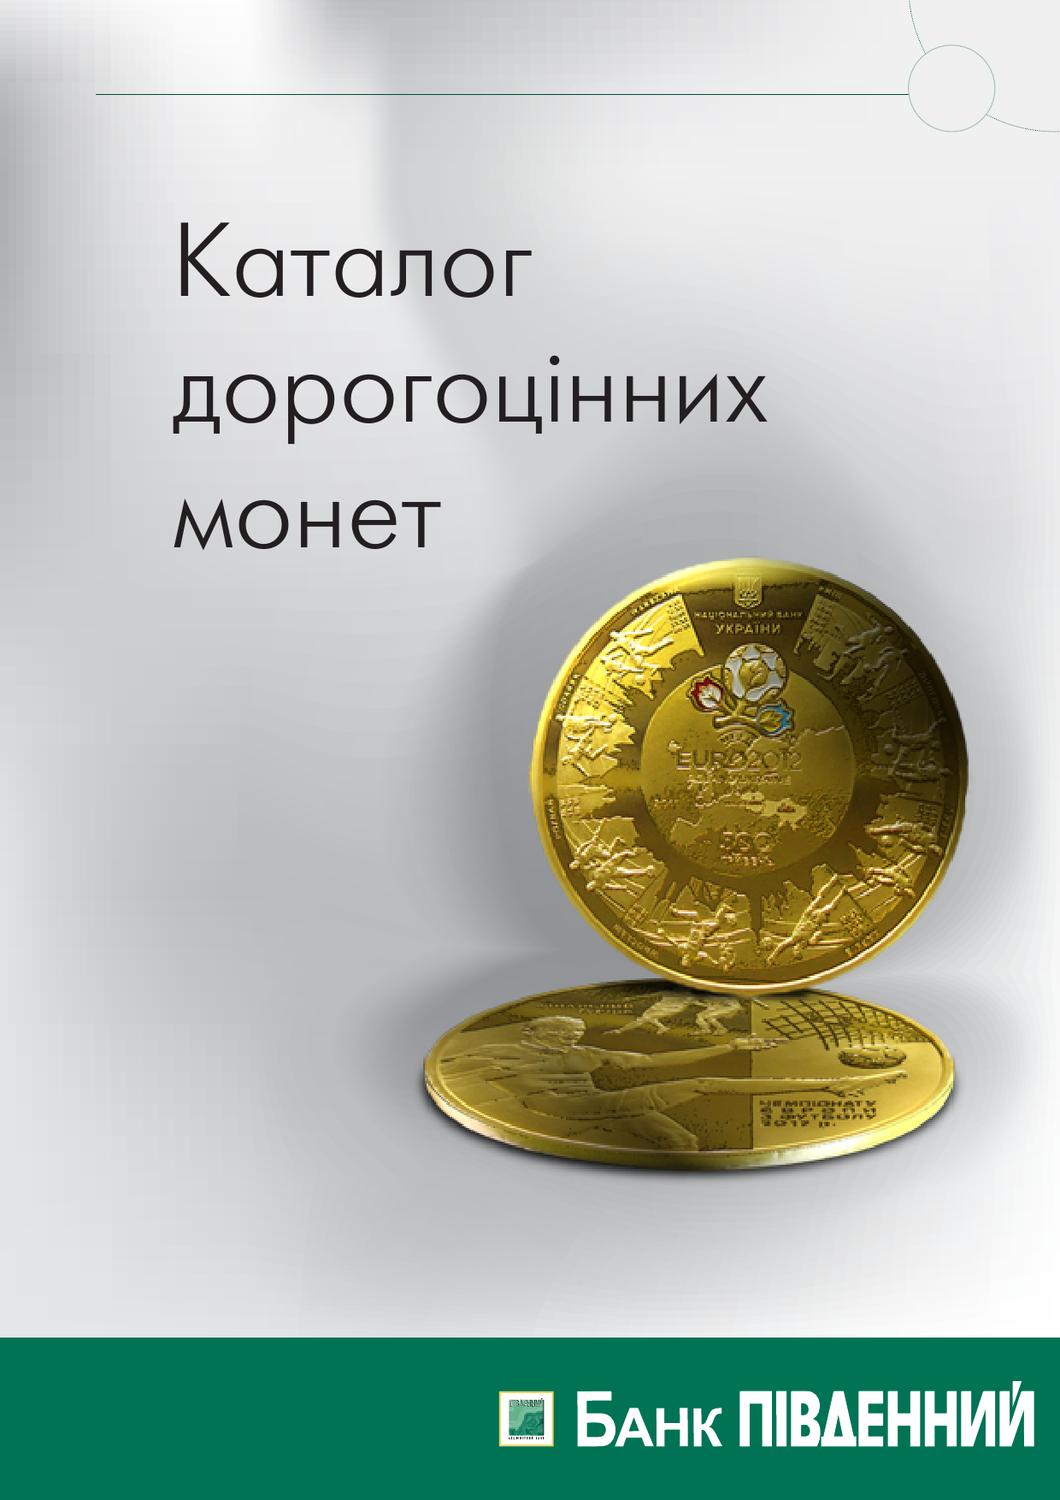 Каталог дорогоцінних монет, 2013